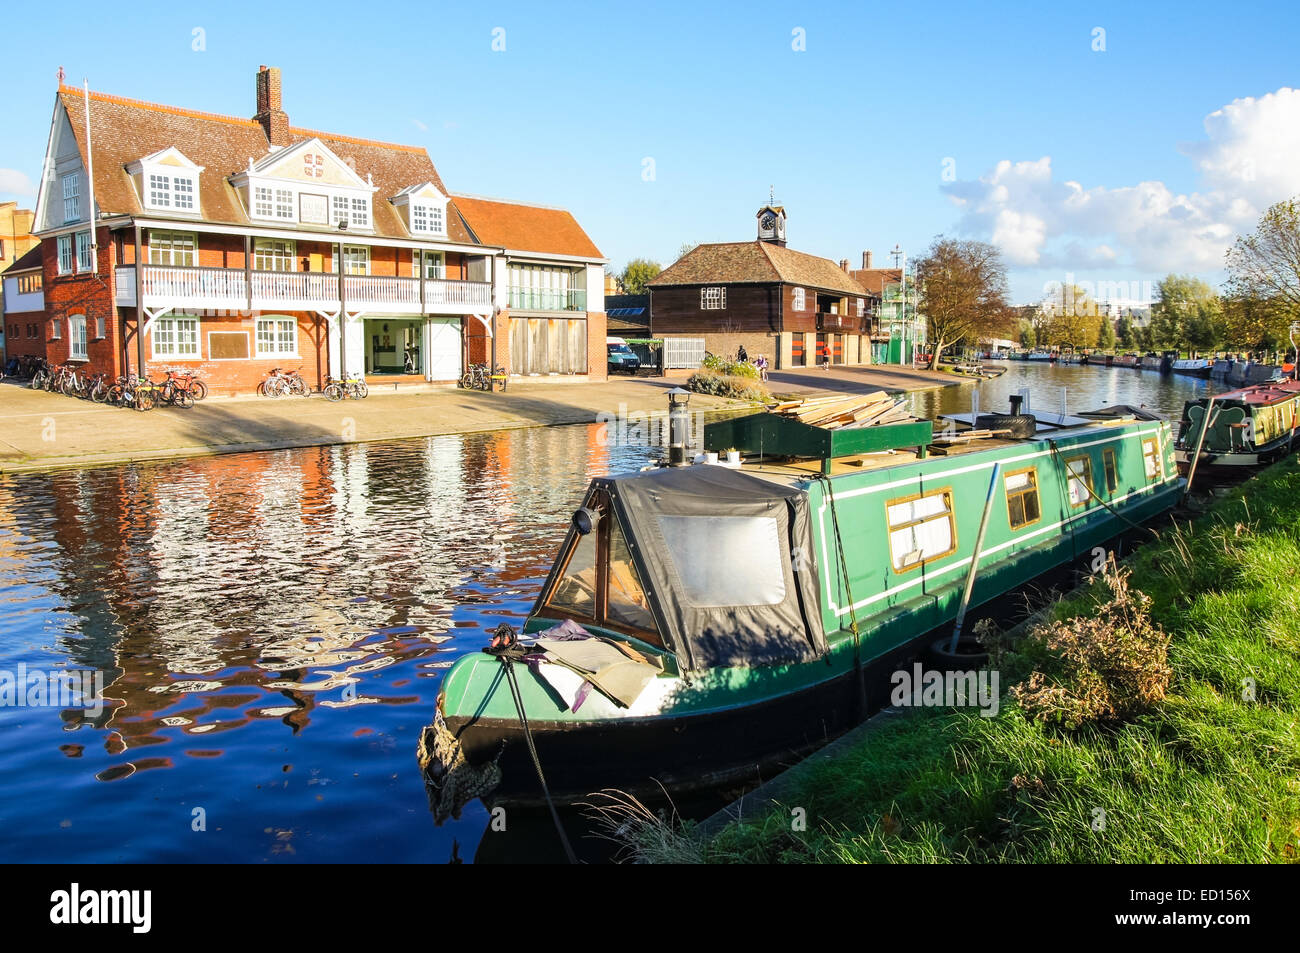 Péniche sur la rivière Cam en automne, Cambridge Cambridgeshire Angleterre Royaume-Uni UK Banque D'Images